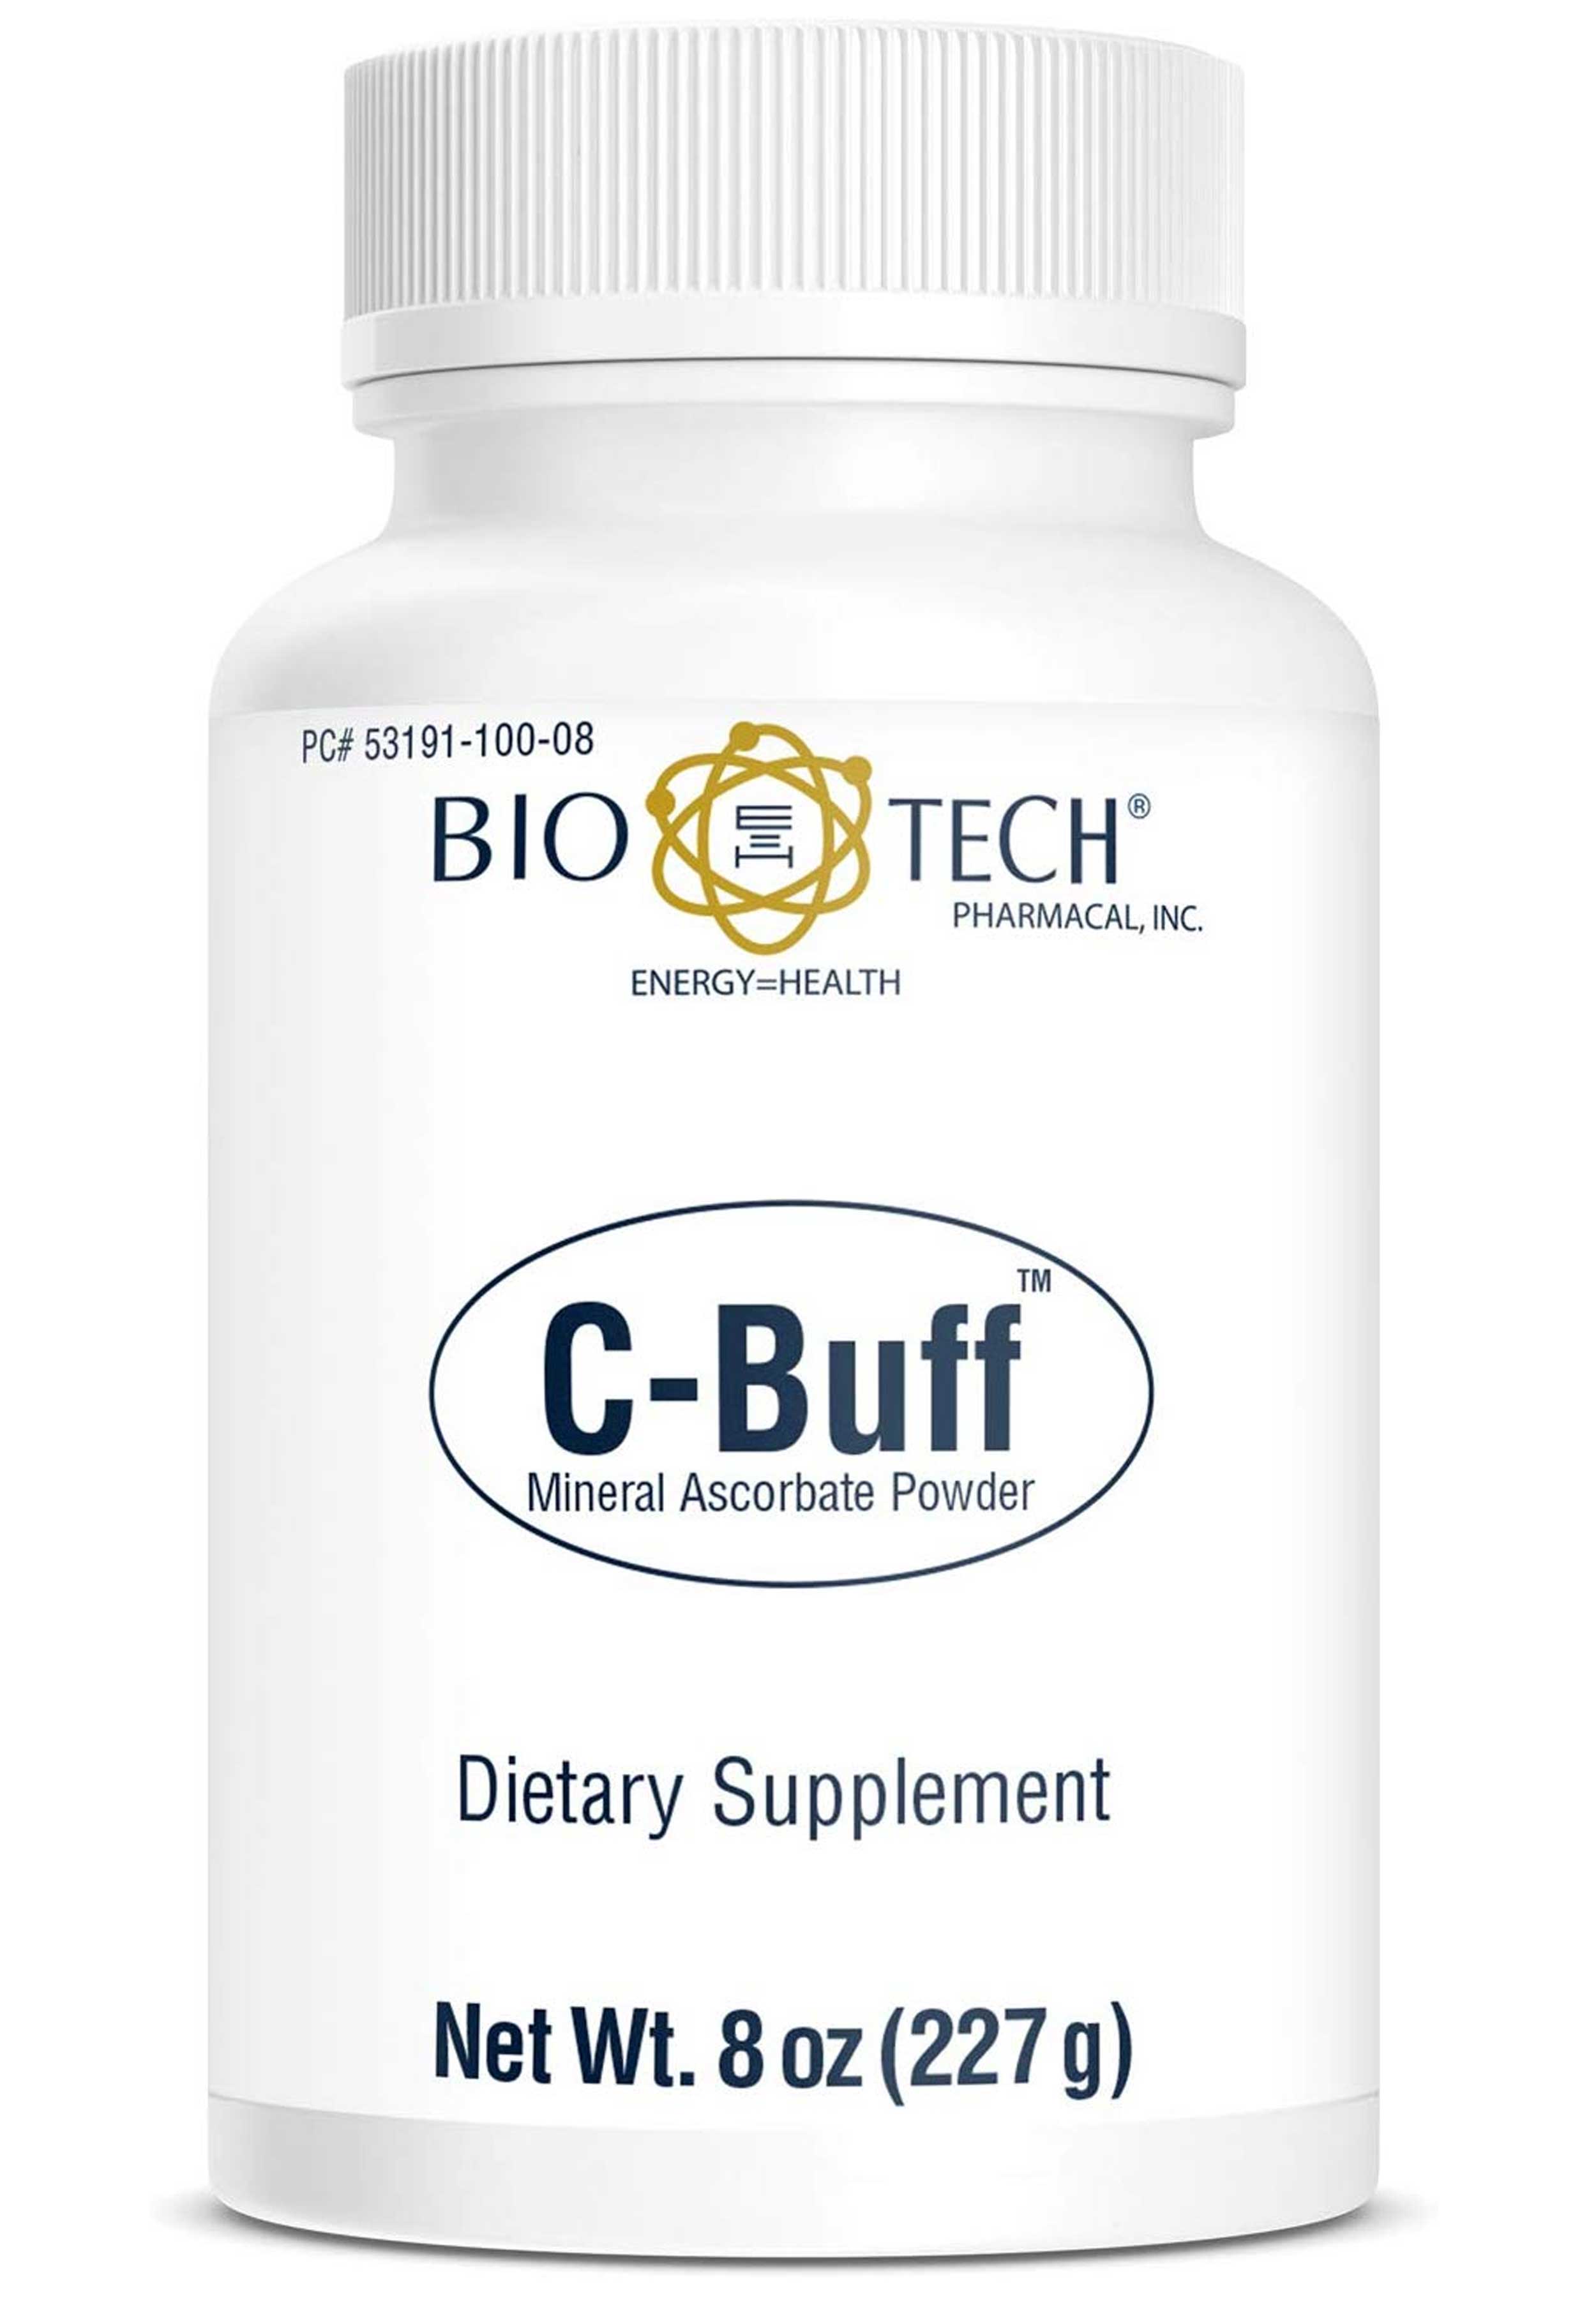 Bio-Tech Pharmacal C-Buff